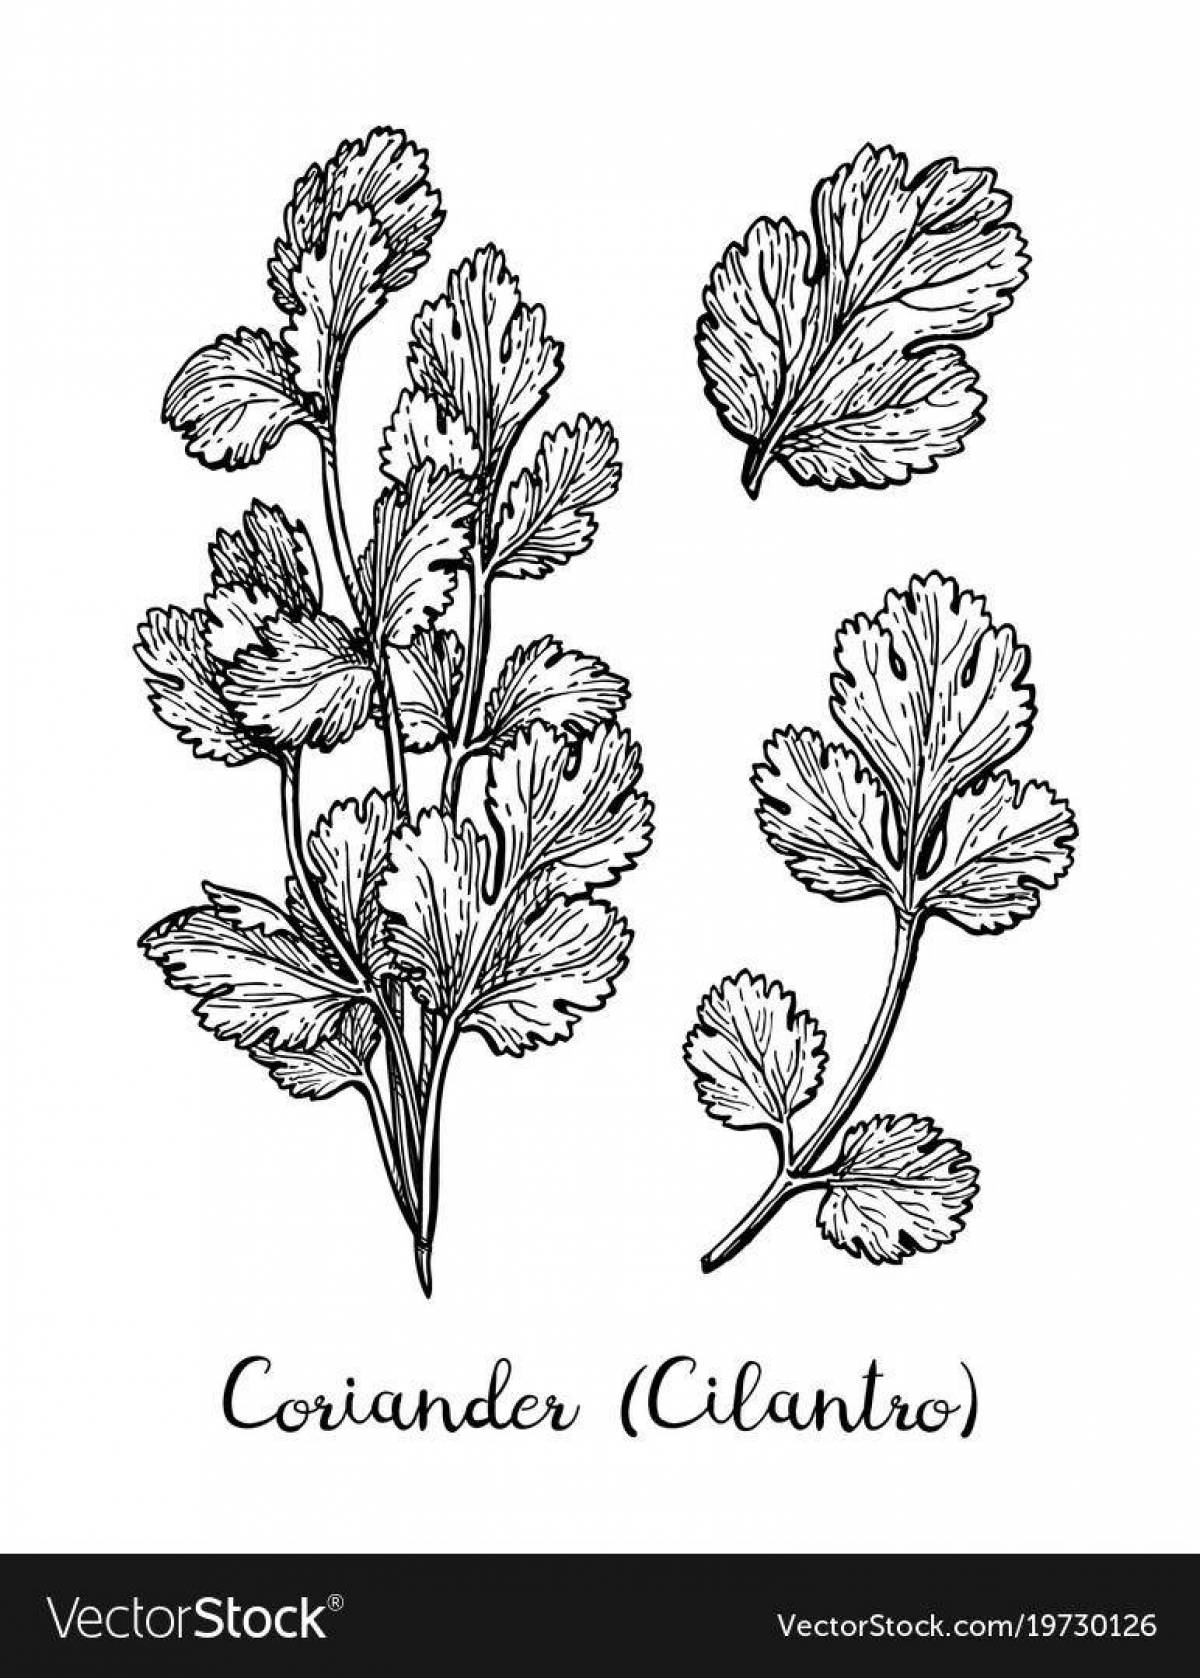 Charming cilantro coloring